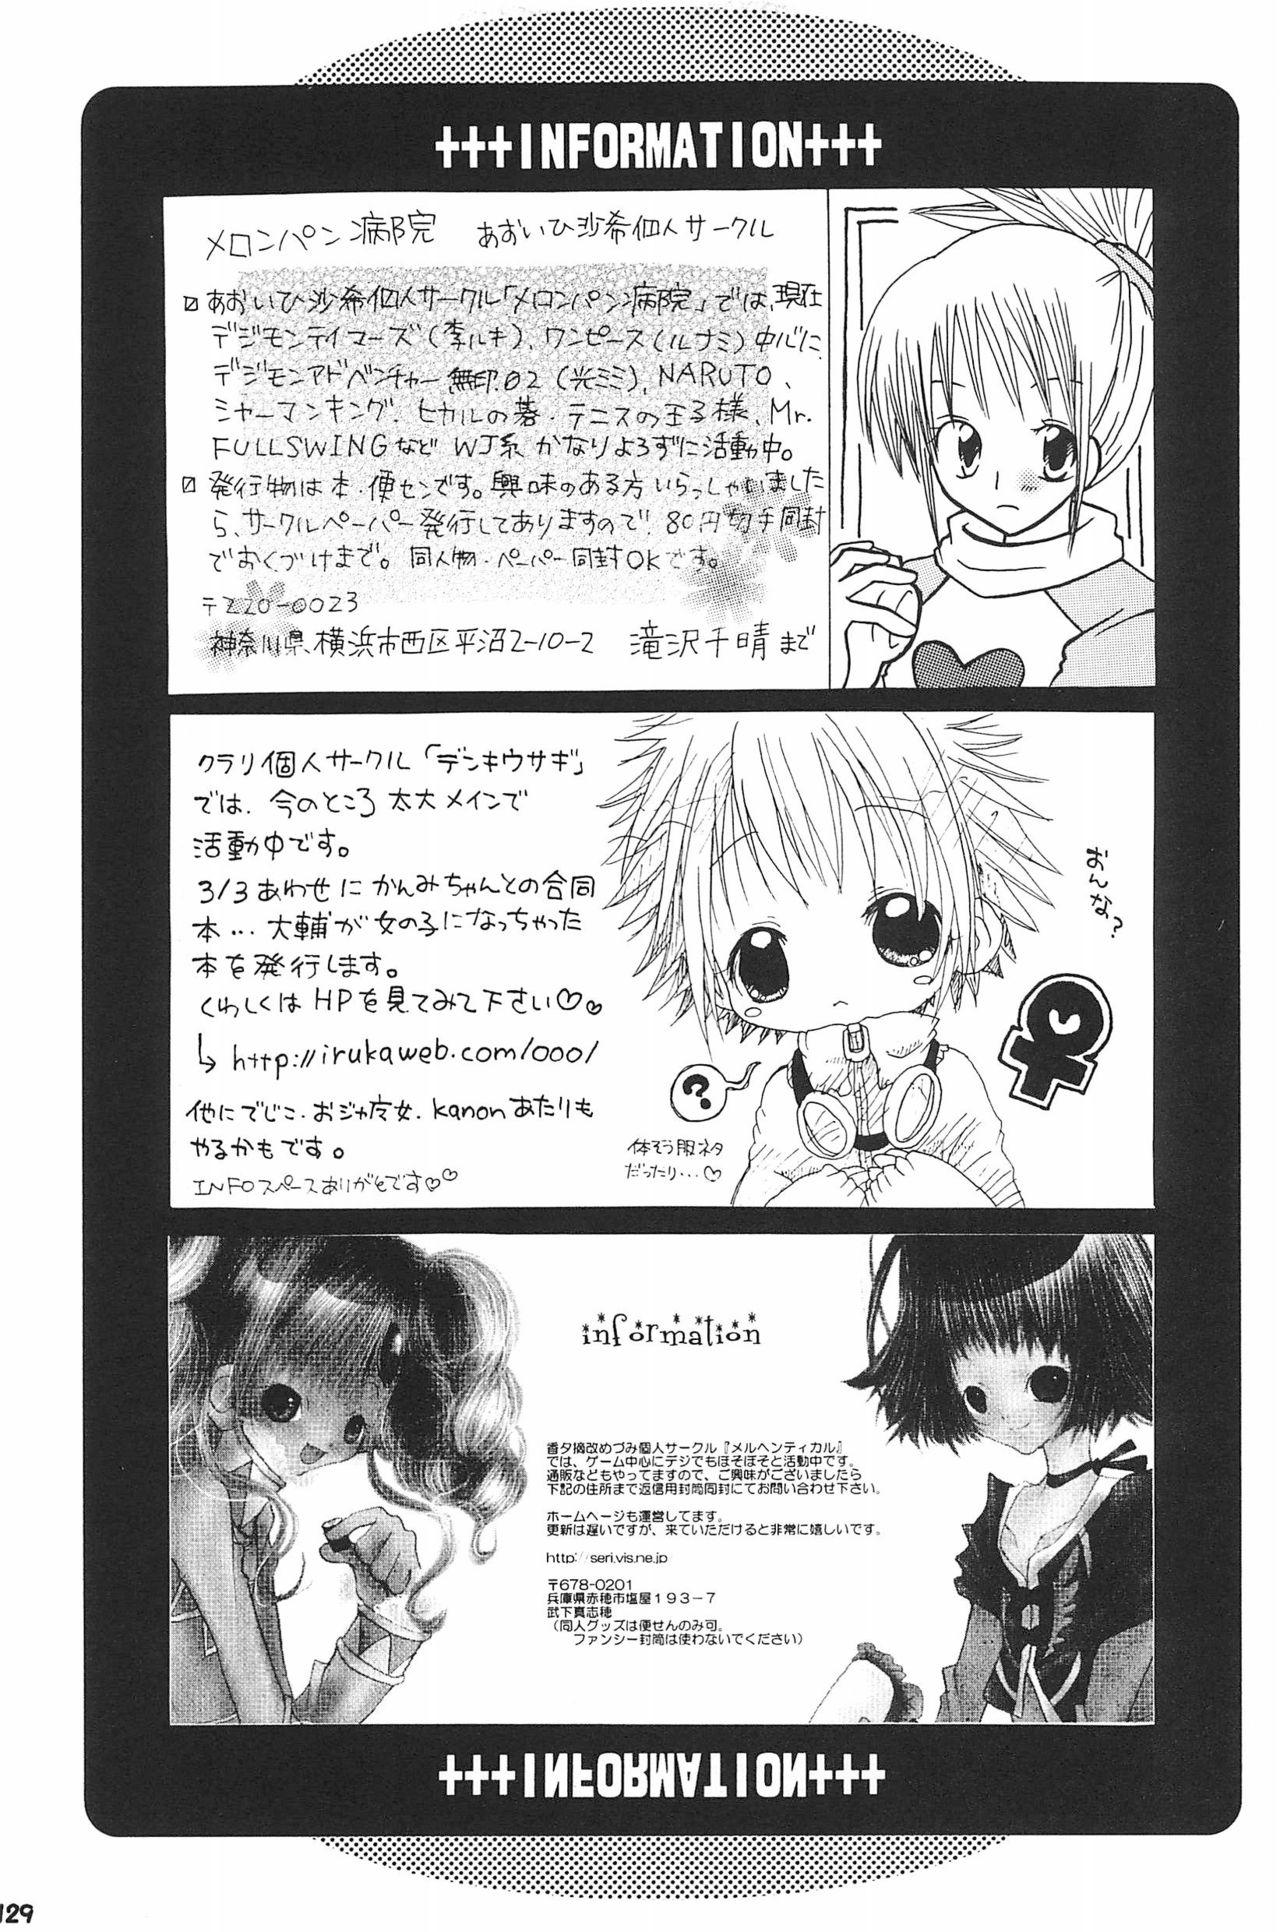 (SC15) [LeeRuki Anthology Jikkou Iinkai (Various)] LeeRuki Anthology J&R REPORT (Digimon Tamers) 130